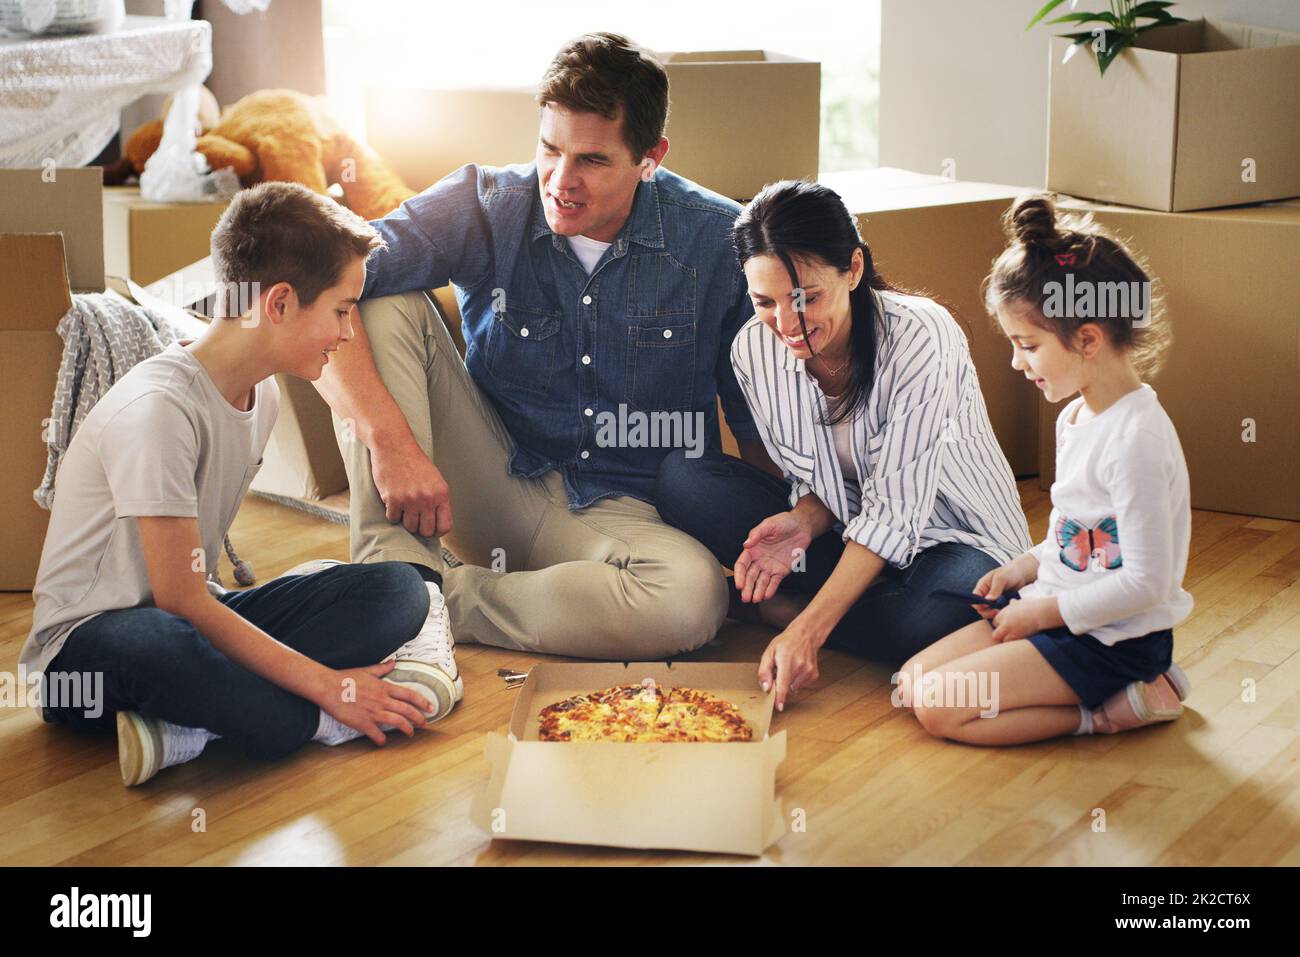 Essen eins und viele weitere werden kommen. Aufnahme einer glücklichen jungen Familie, die gemeinsam Pizza in ihrem neuen Zuhause hat. Stockfoto